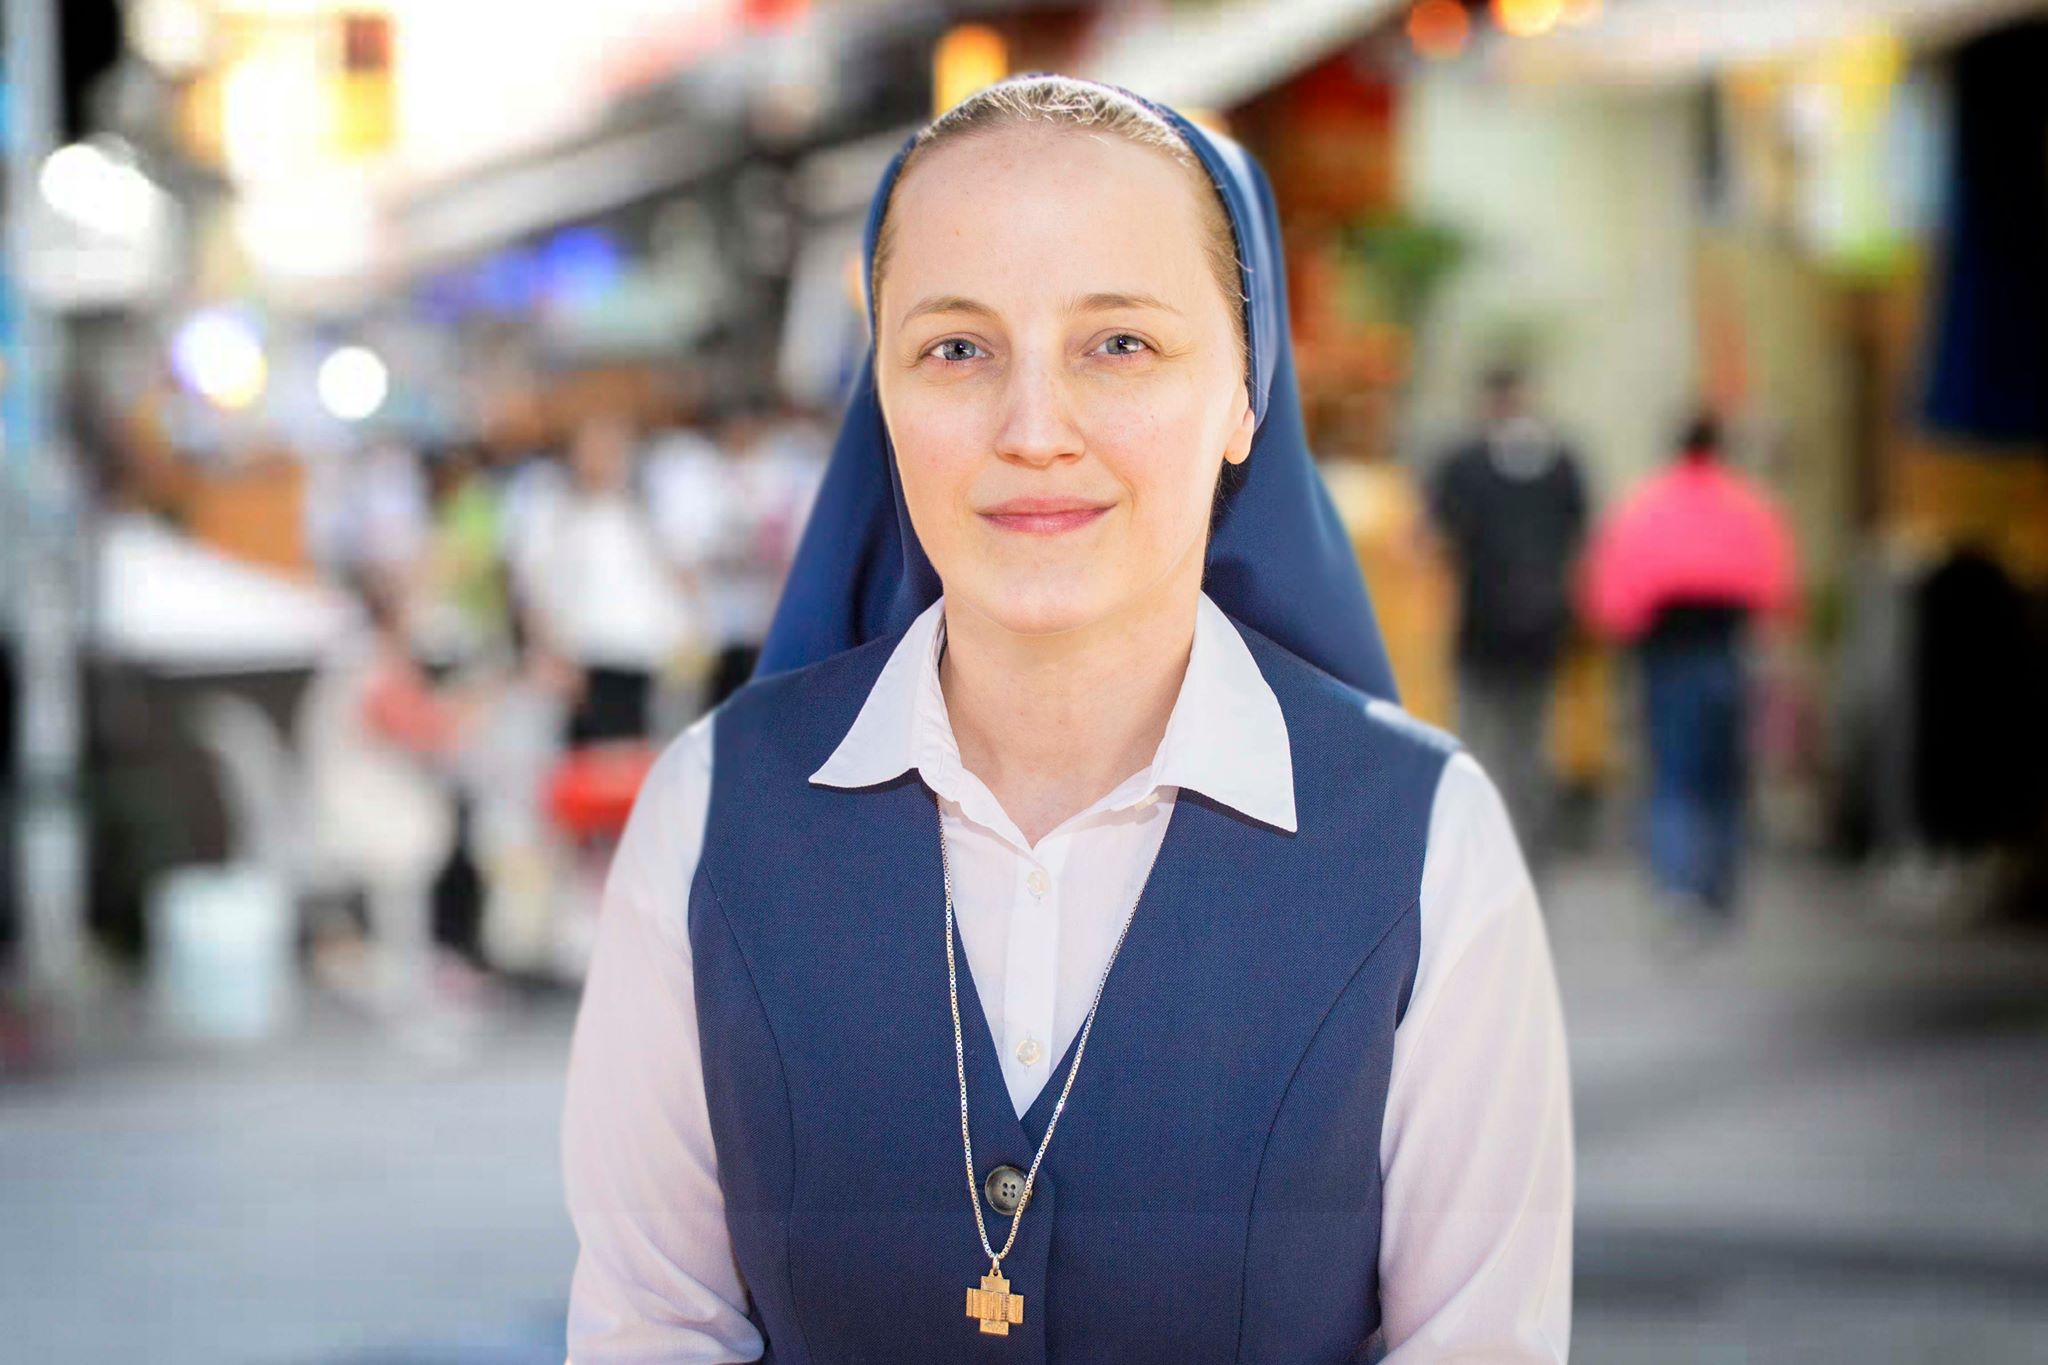 Former Atheist-Turned-Nun Meditates On Death To Lead A Focused Life